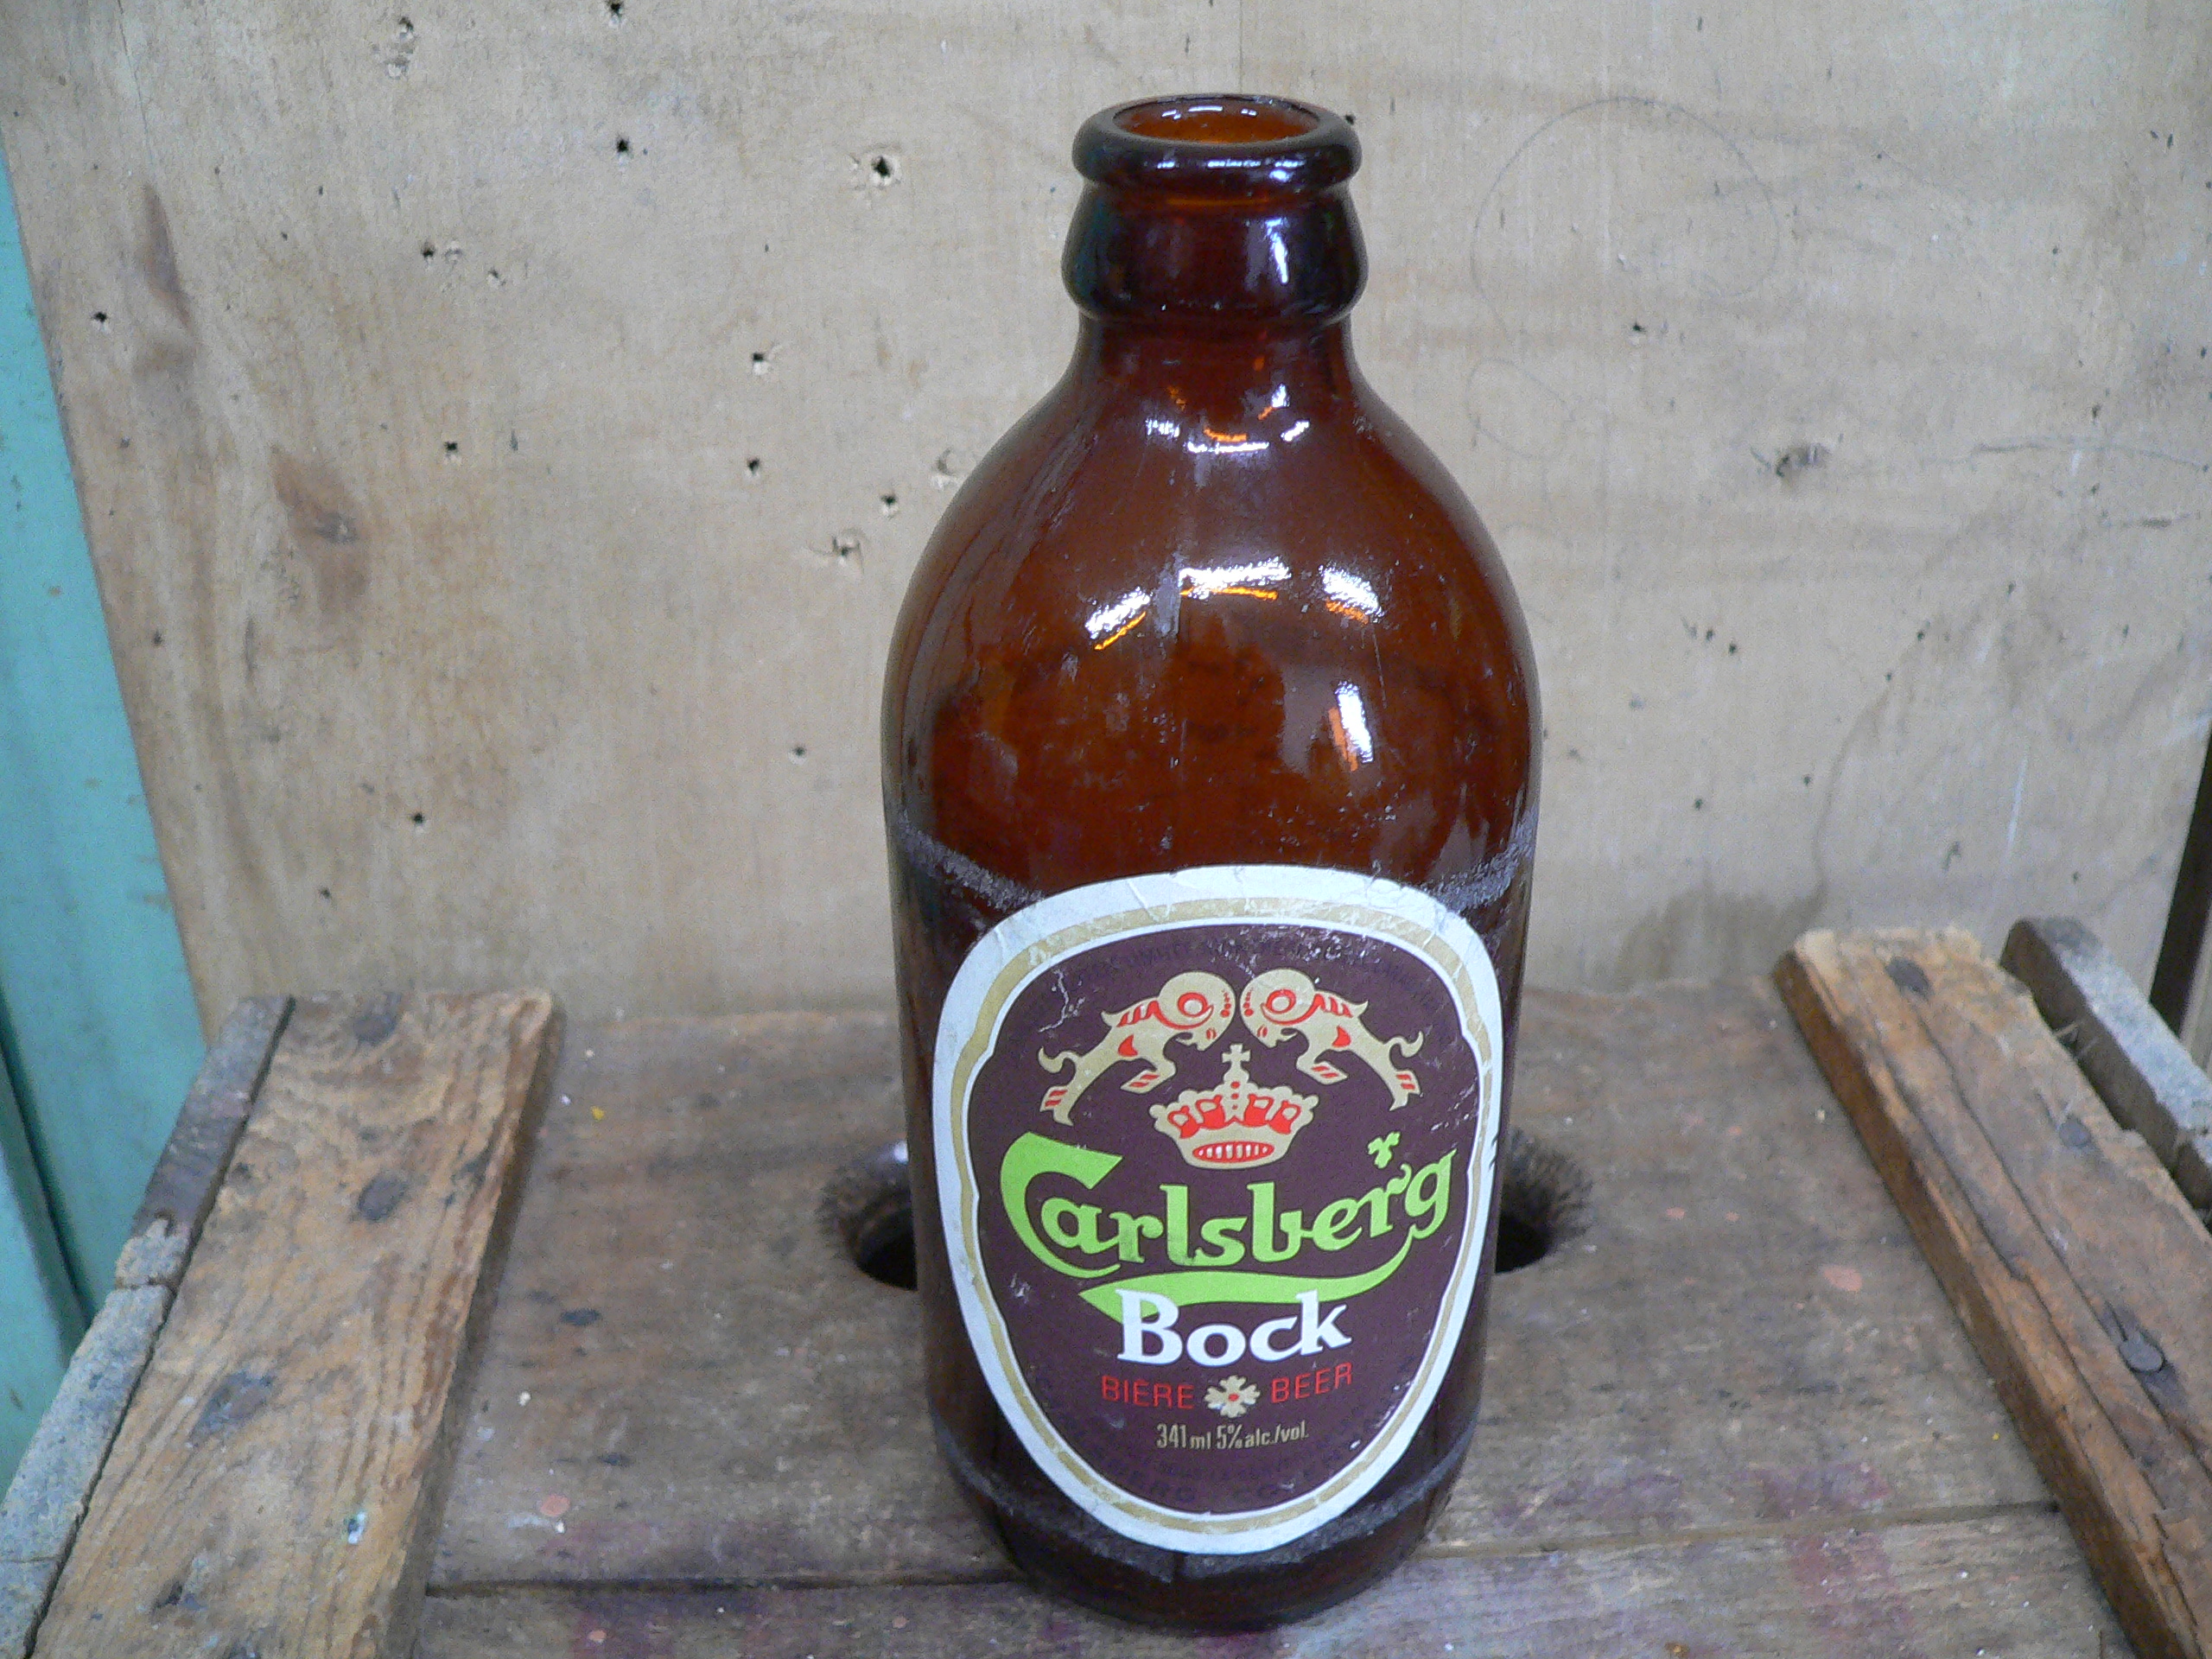 Bouteille antique bière carlsberg bock # 5742.2